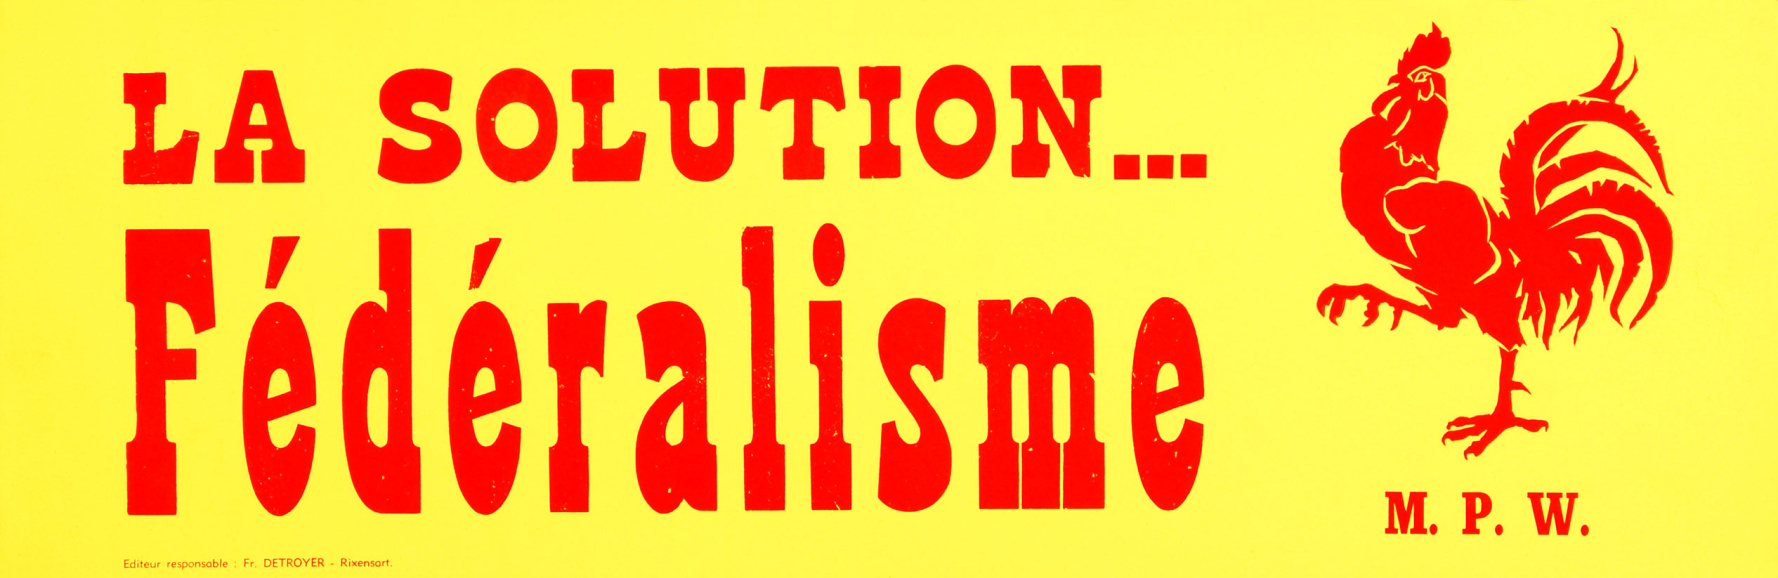 Affiche van de Mouvement populaire wallon (MPW) voor de federalisering van België, 1961-1968. (Amsab-ISG, af003212)